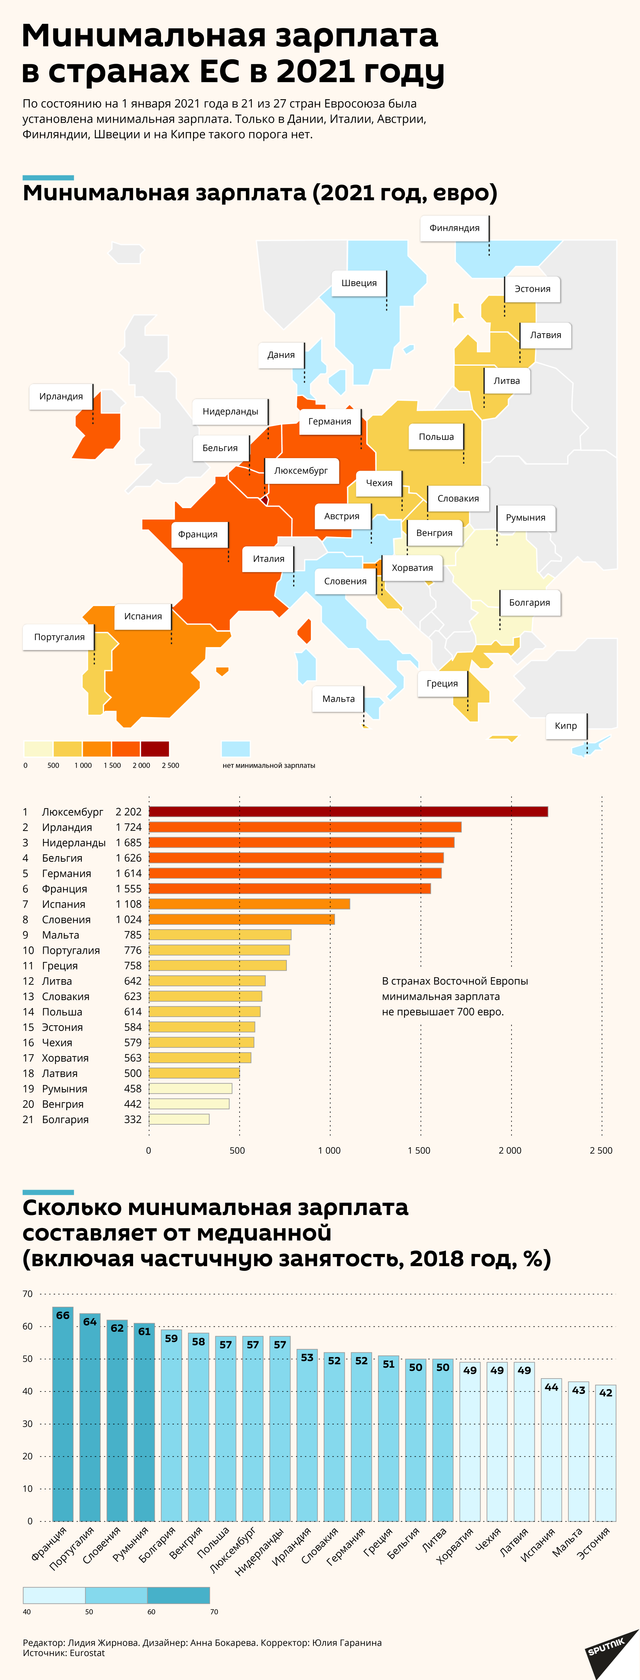 Минимальная зарплата в странах ЕС в 2021 году - Sputnik Латвия, 1920, 26.02.2021